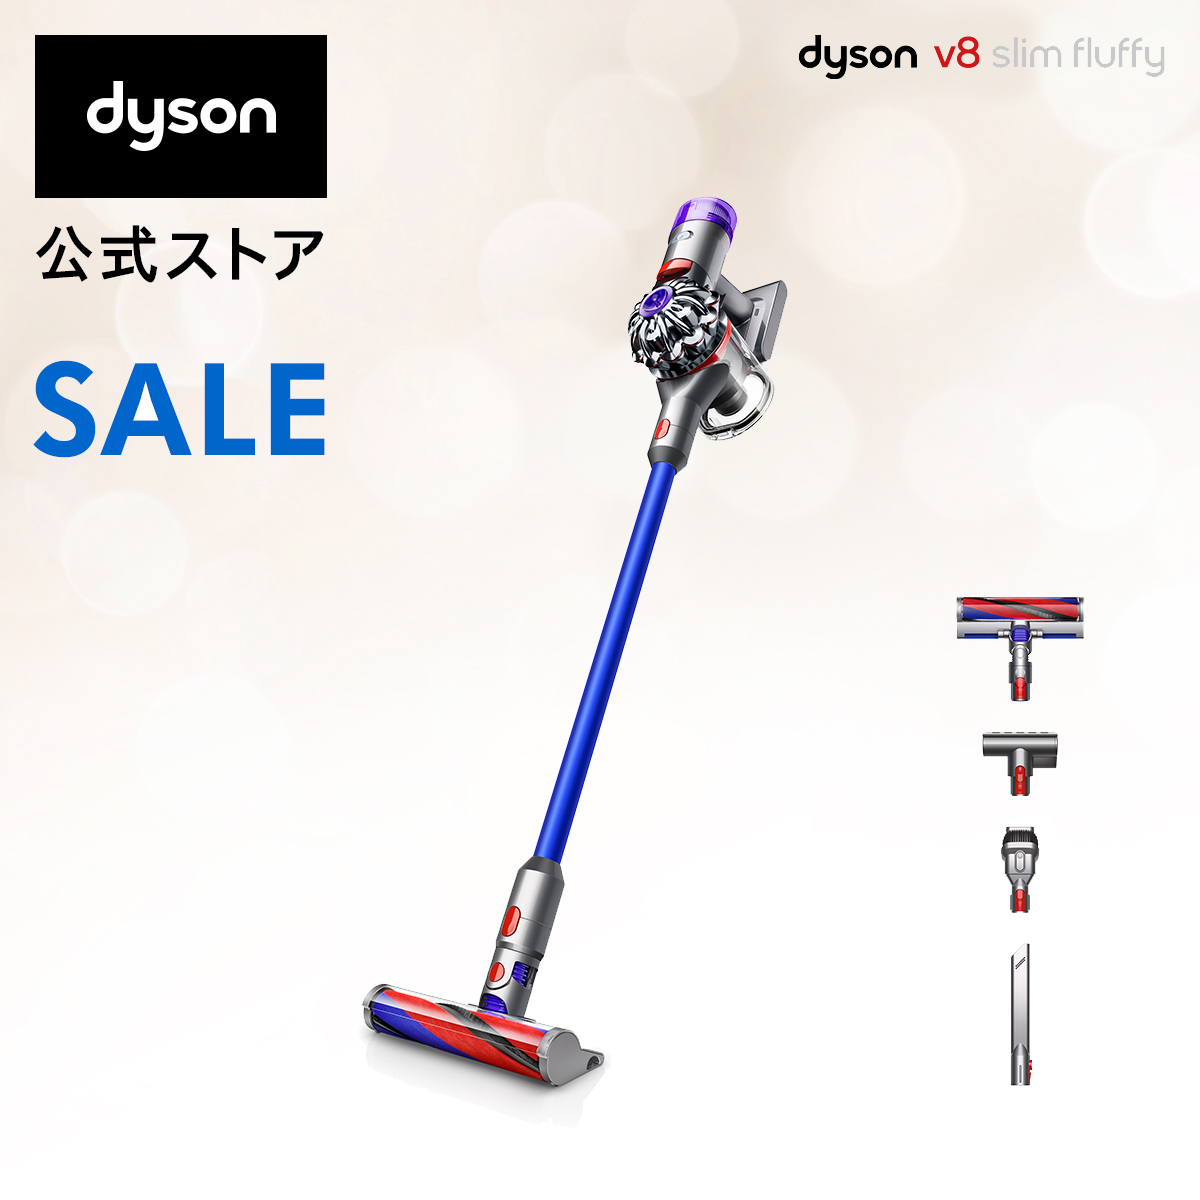 楽天市場】ダイソン Dyson V7 Slim サイクロン式 コードレス掃除機